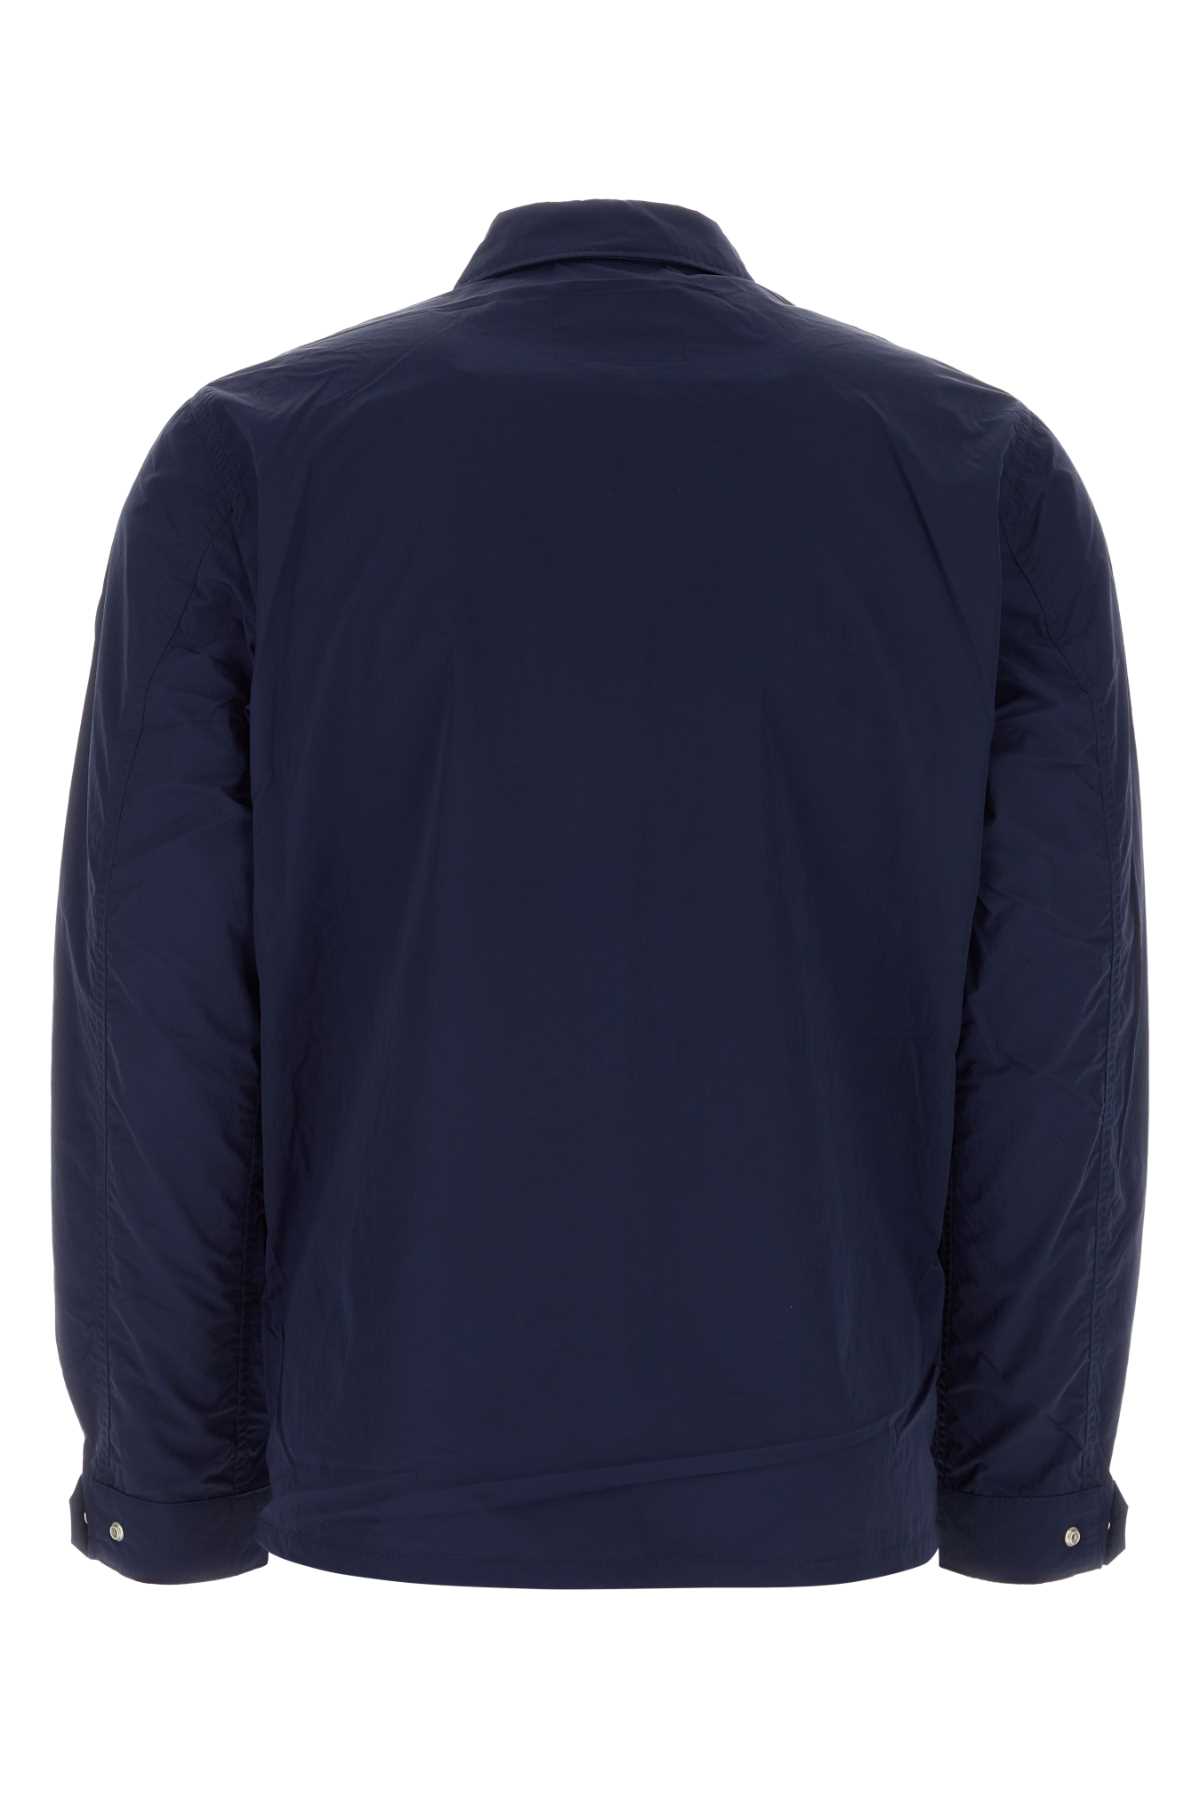 Woolrich Blue Nylon Jacket In 31108